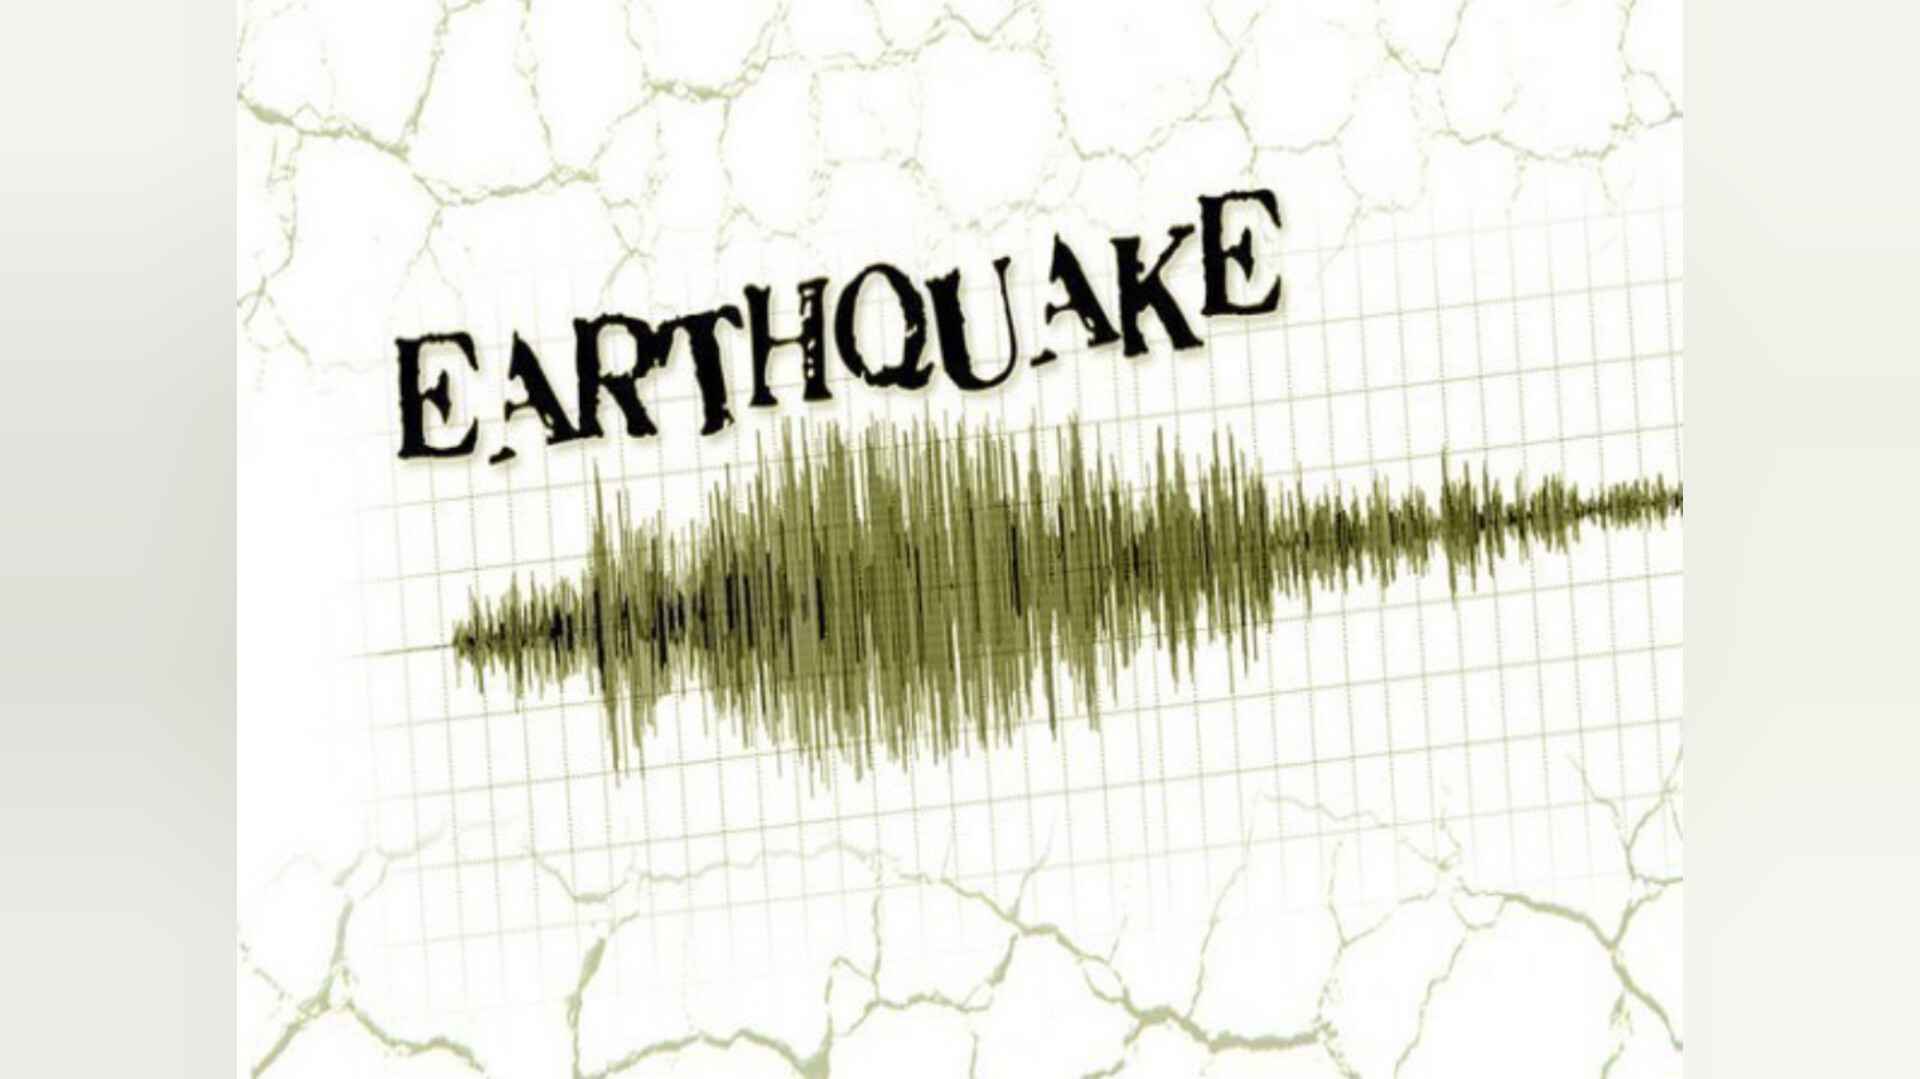 दिल्ली एनसीआर समेत आसपास के क्षेत्रों में महसूस किए गए भूकंप के झटके